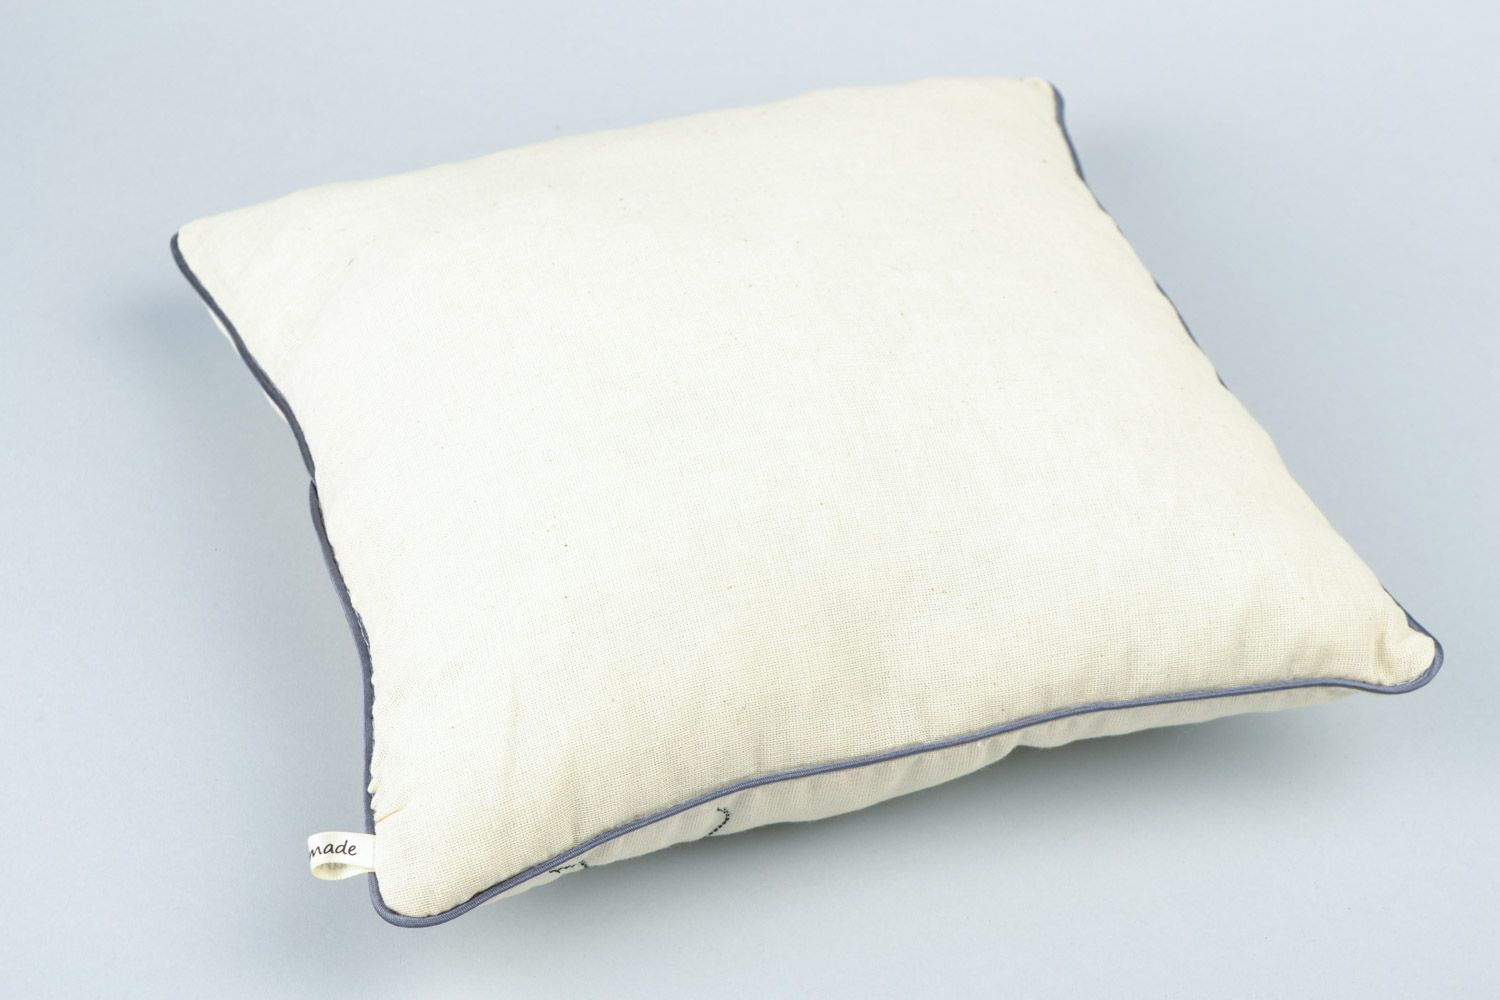 Диванная подушка ручной работы маленькая из ткани светлая с аппликацией муравей фото 5